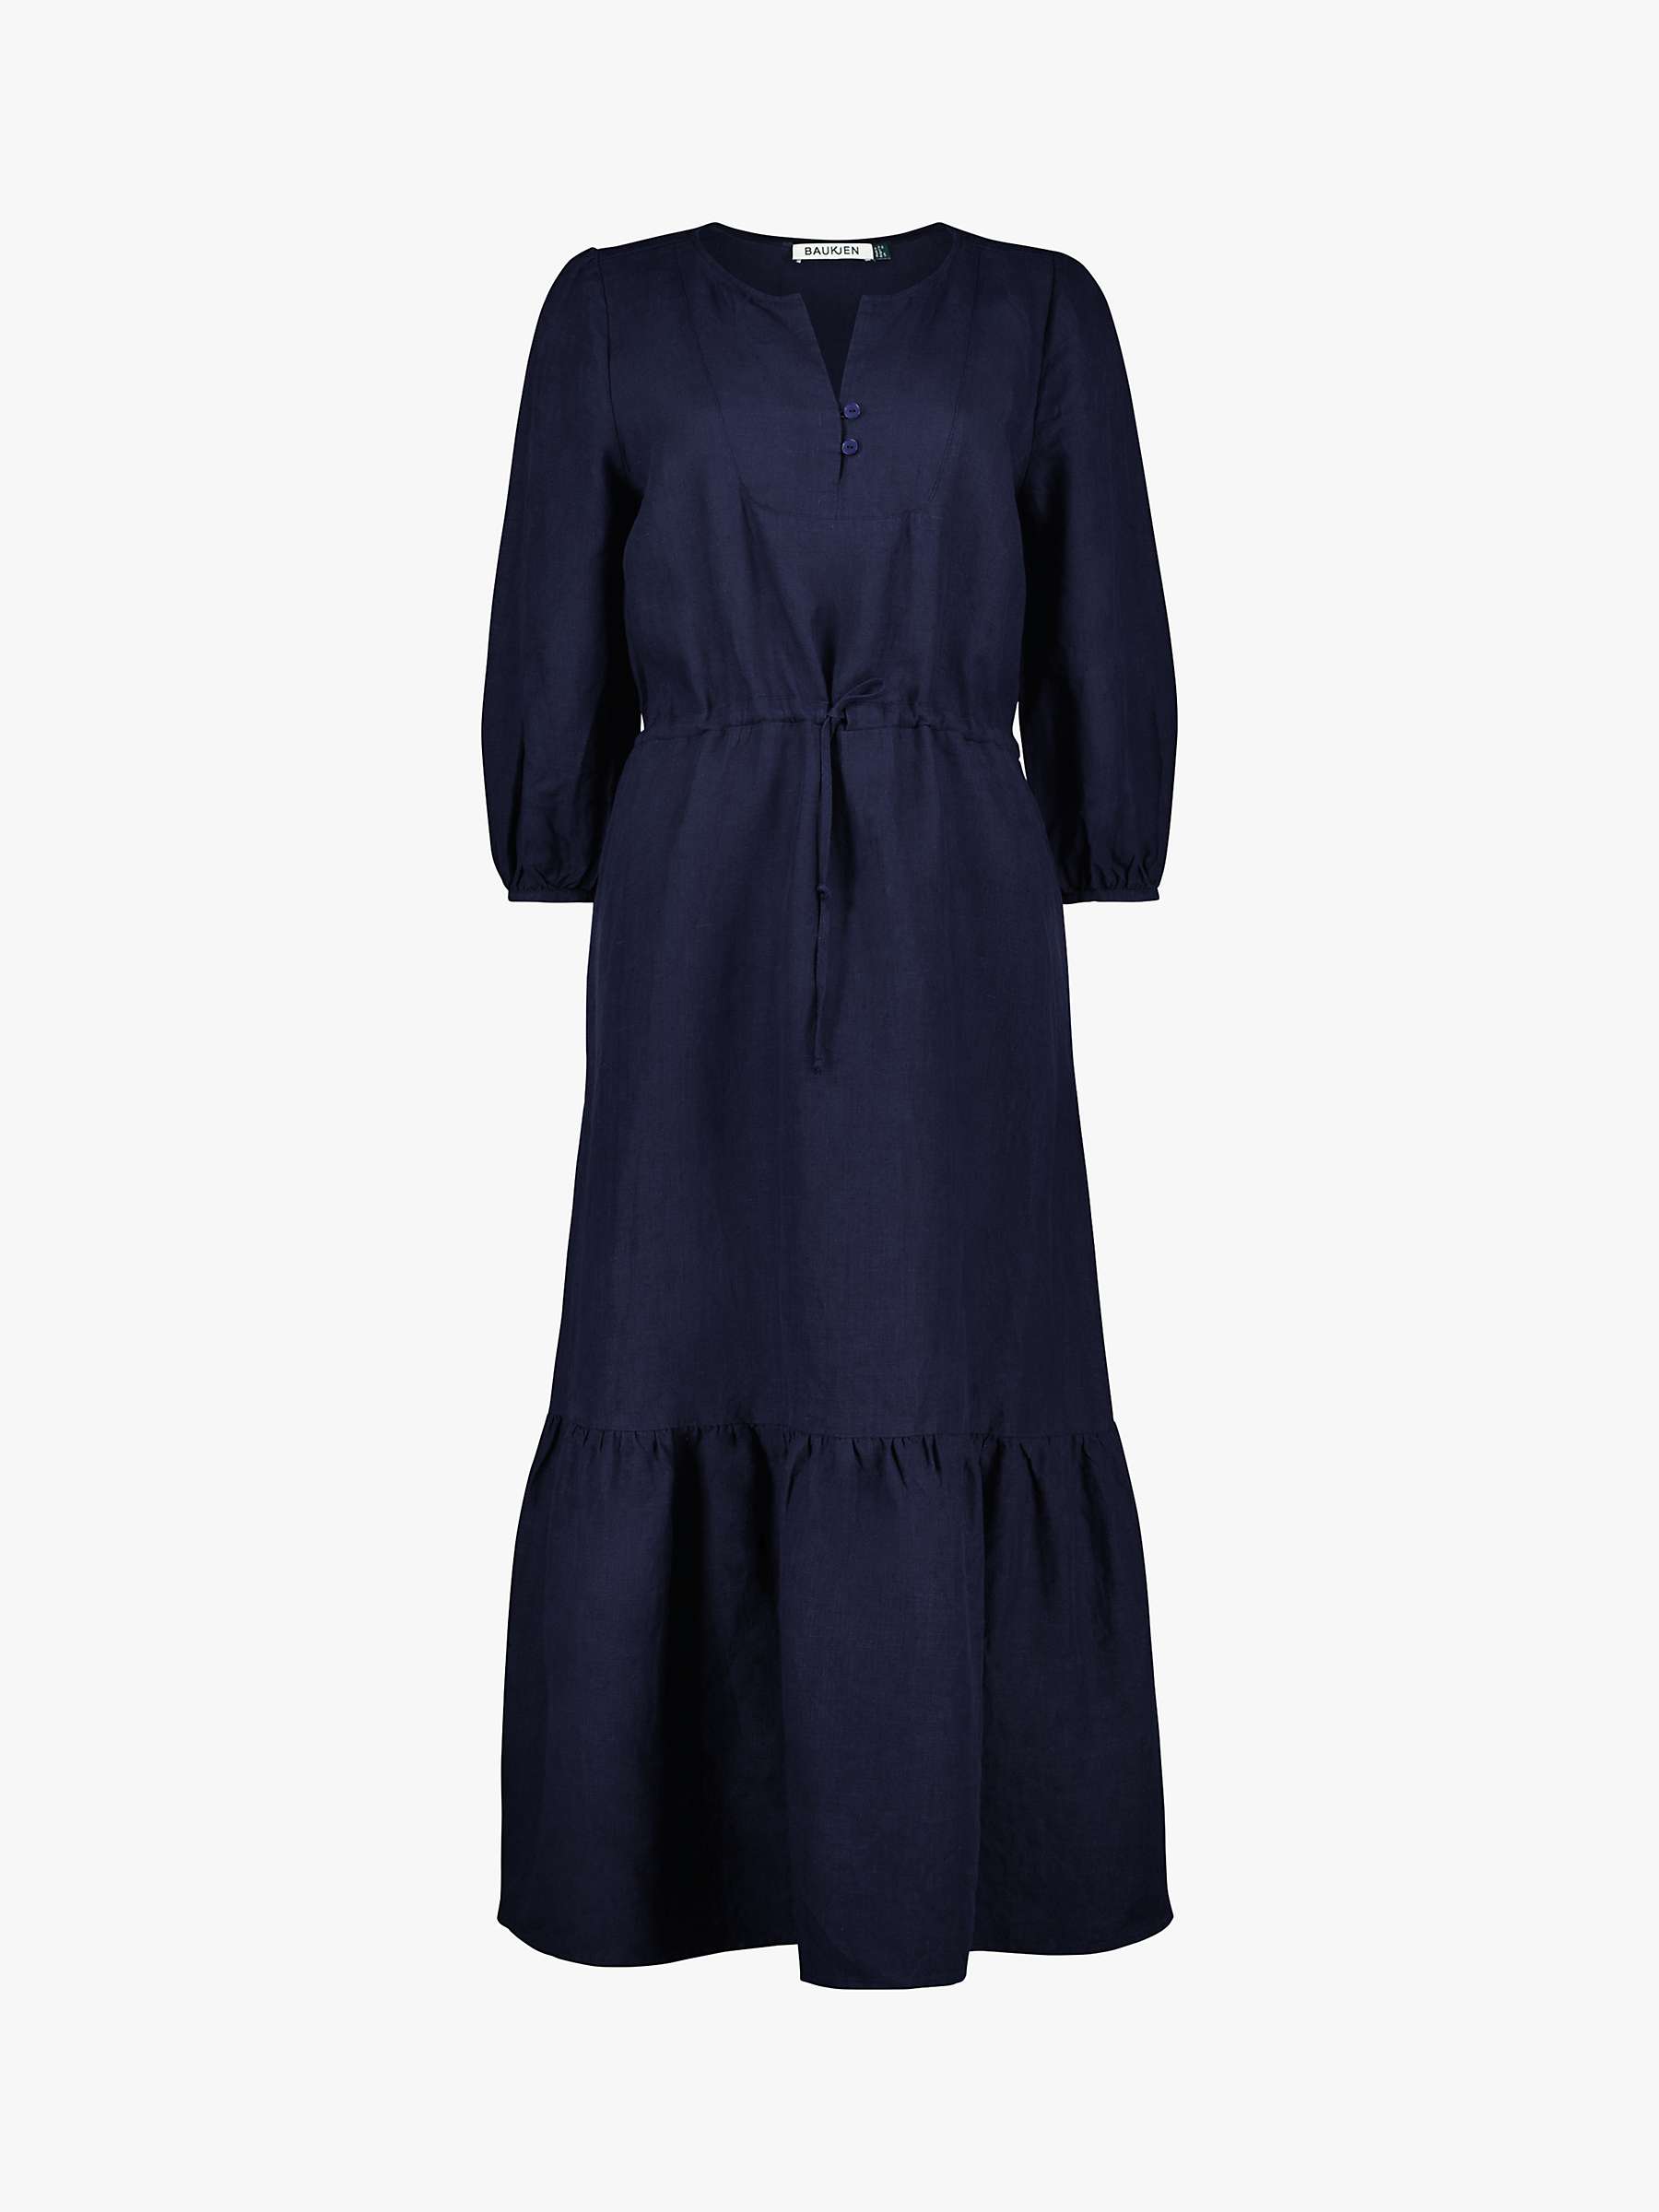 Buy Baukjen Maxine Drawstring Midi Dress, Navy Online at johnlewis.com